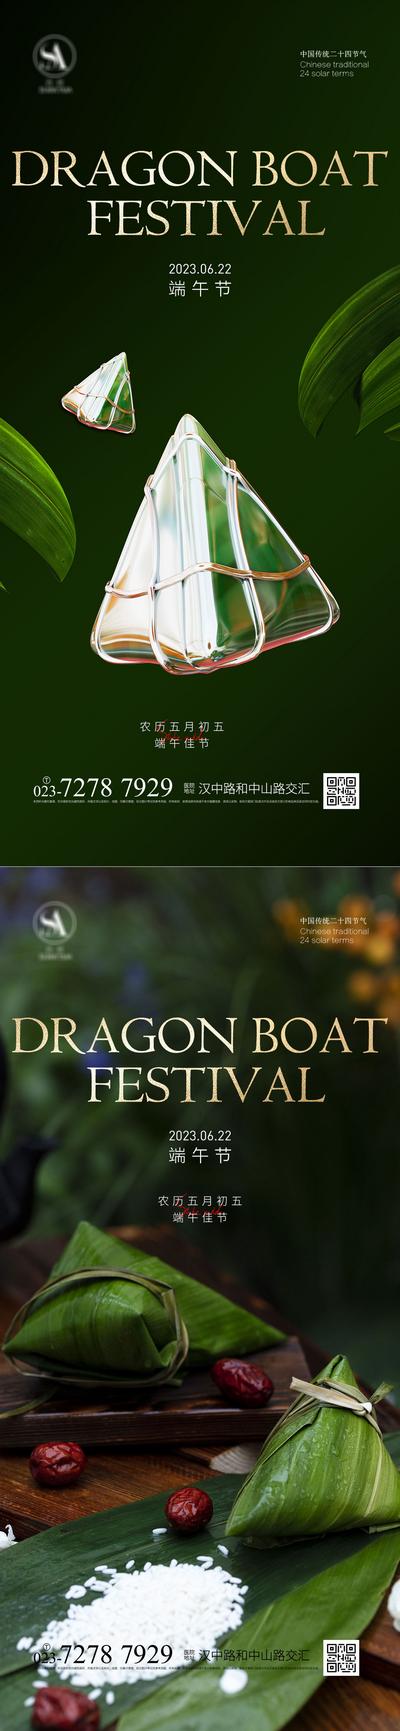 南门网 广告 海报 中国传统节日 端午 端午节 粽子 系列 品质